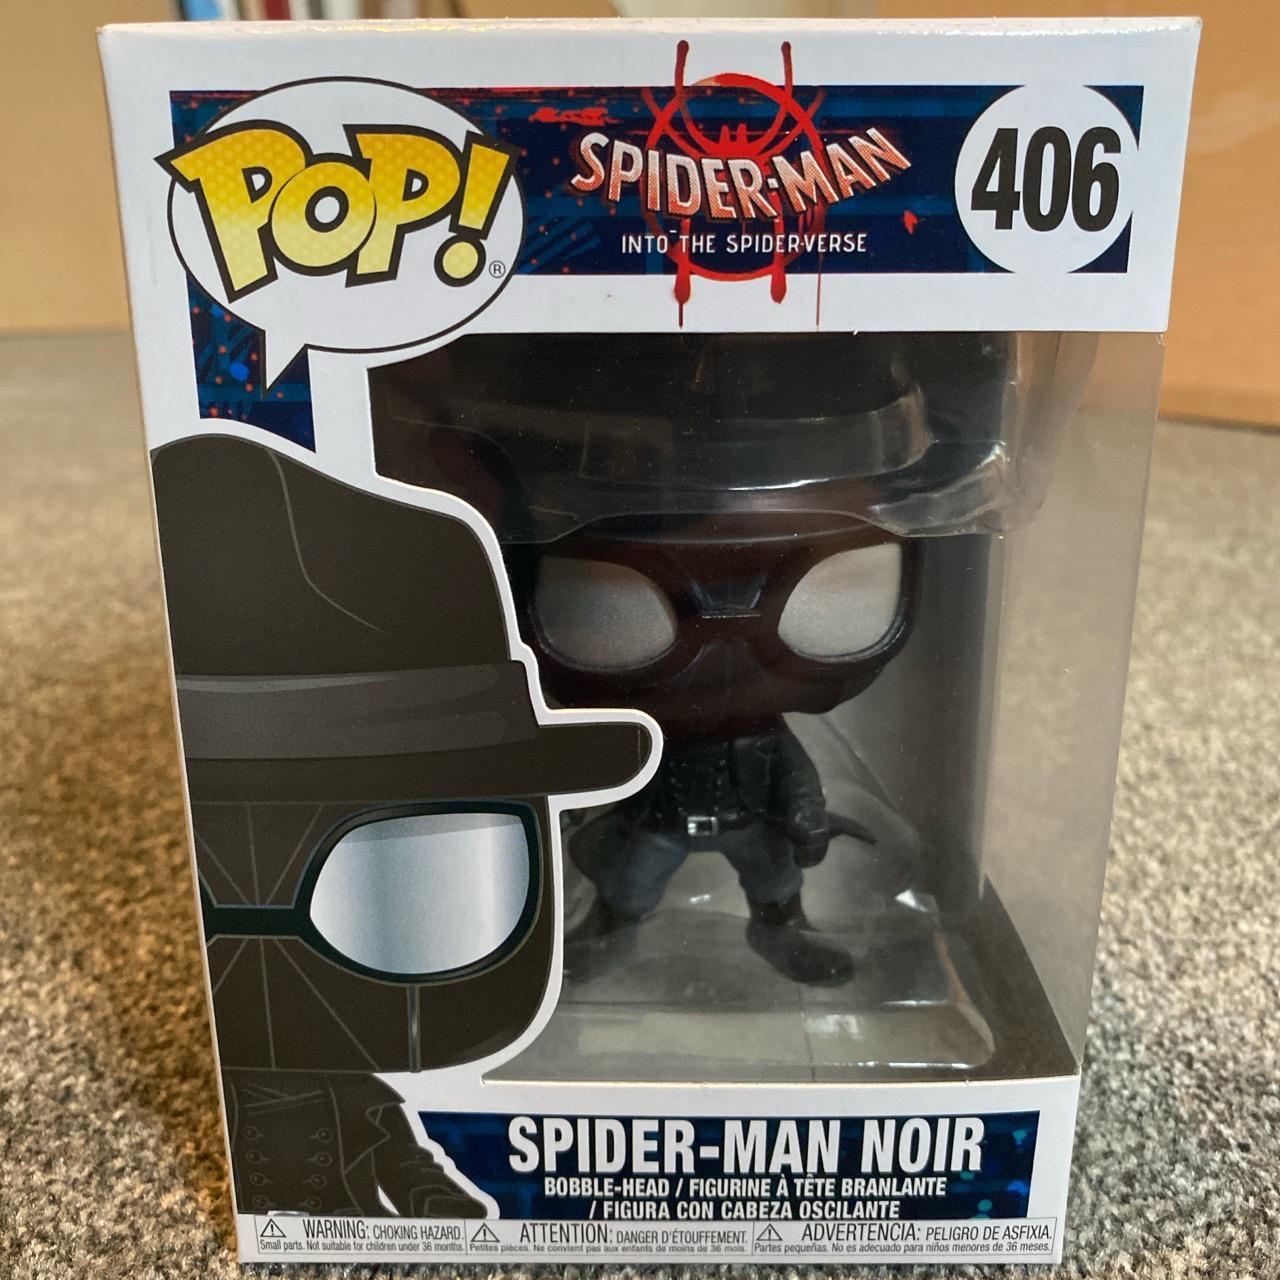 Spider-Man (Noir) - Spider-Man - Spider-Man Into the Spiderverse Pop! -  Funko Action Figure